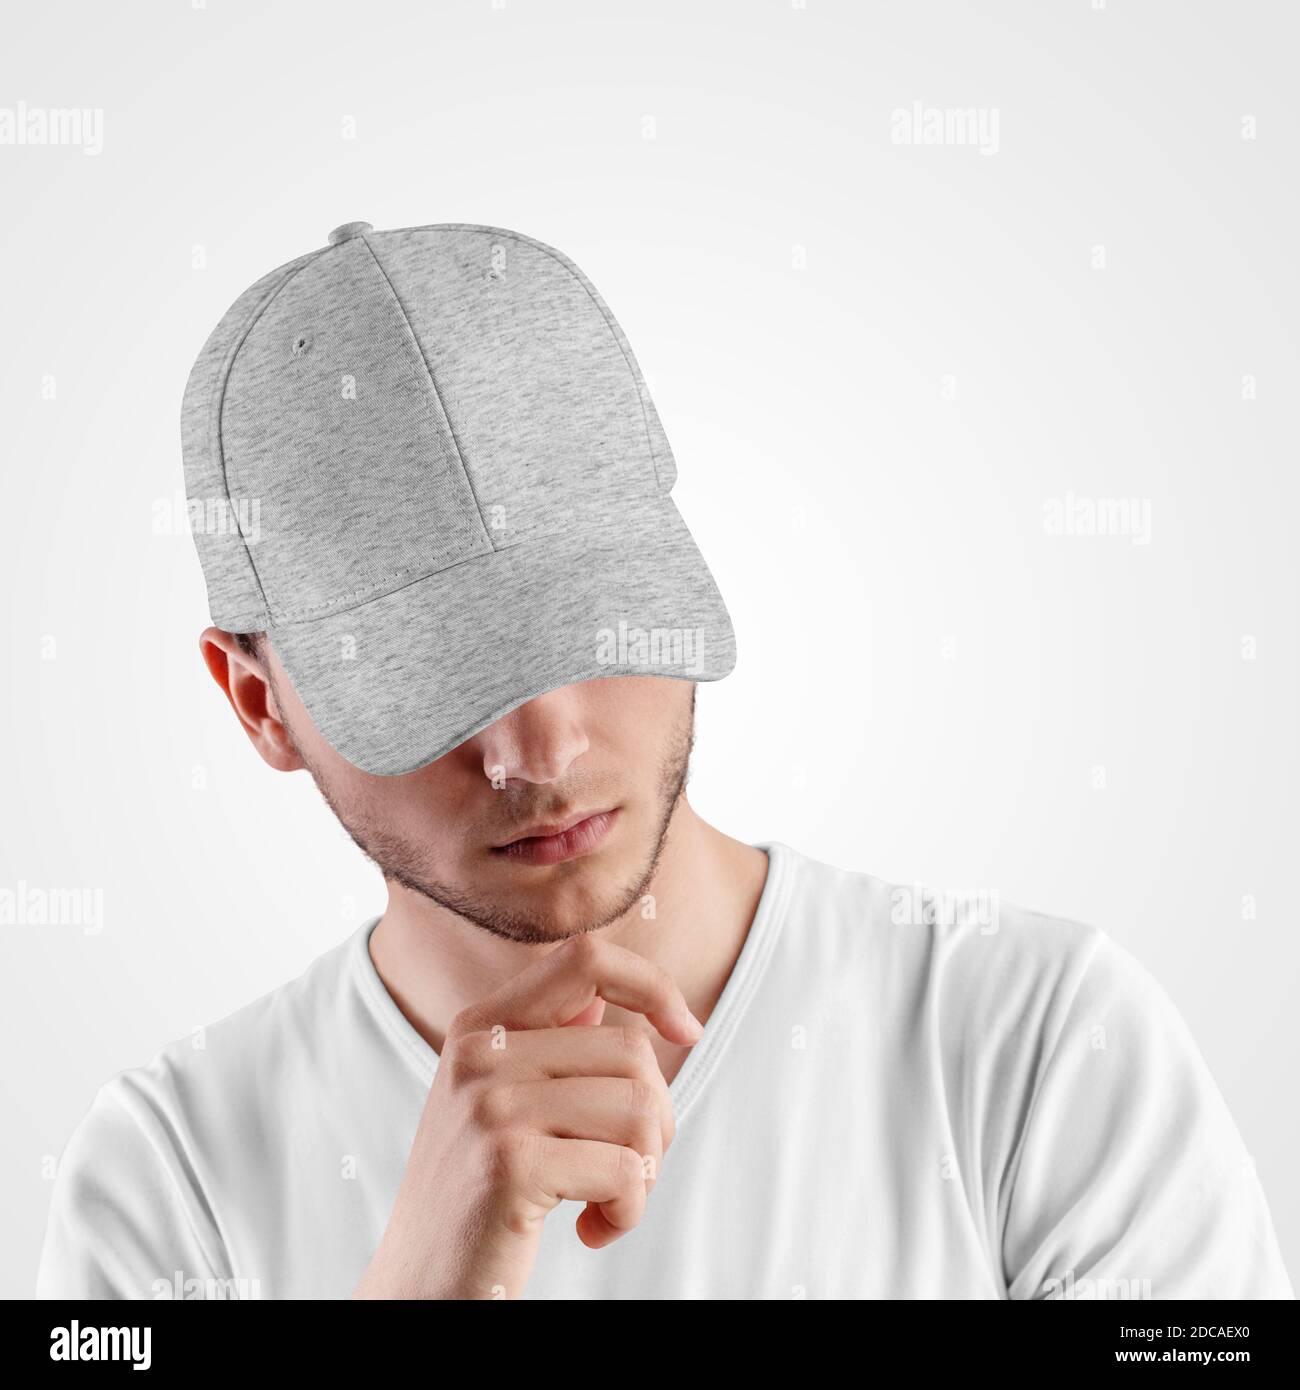 Modèle de casquette de baseball gris chiné, chapeau avec visière sur la  tête de l'homme, pour la présentation du design, imprimé. Maquette de  coiffure tendance pour pro du soleil Photo Stock -